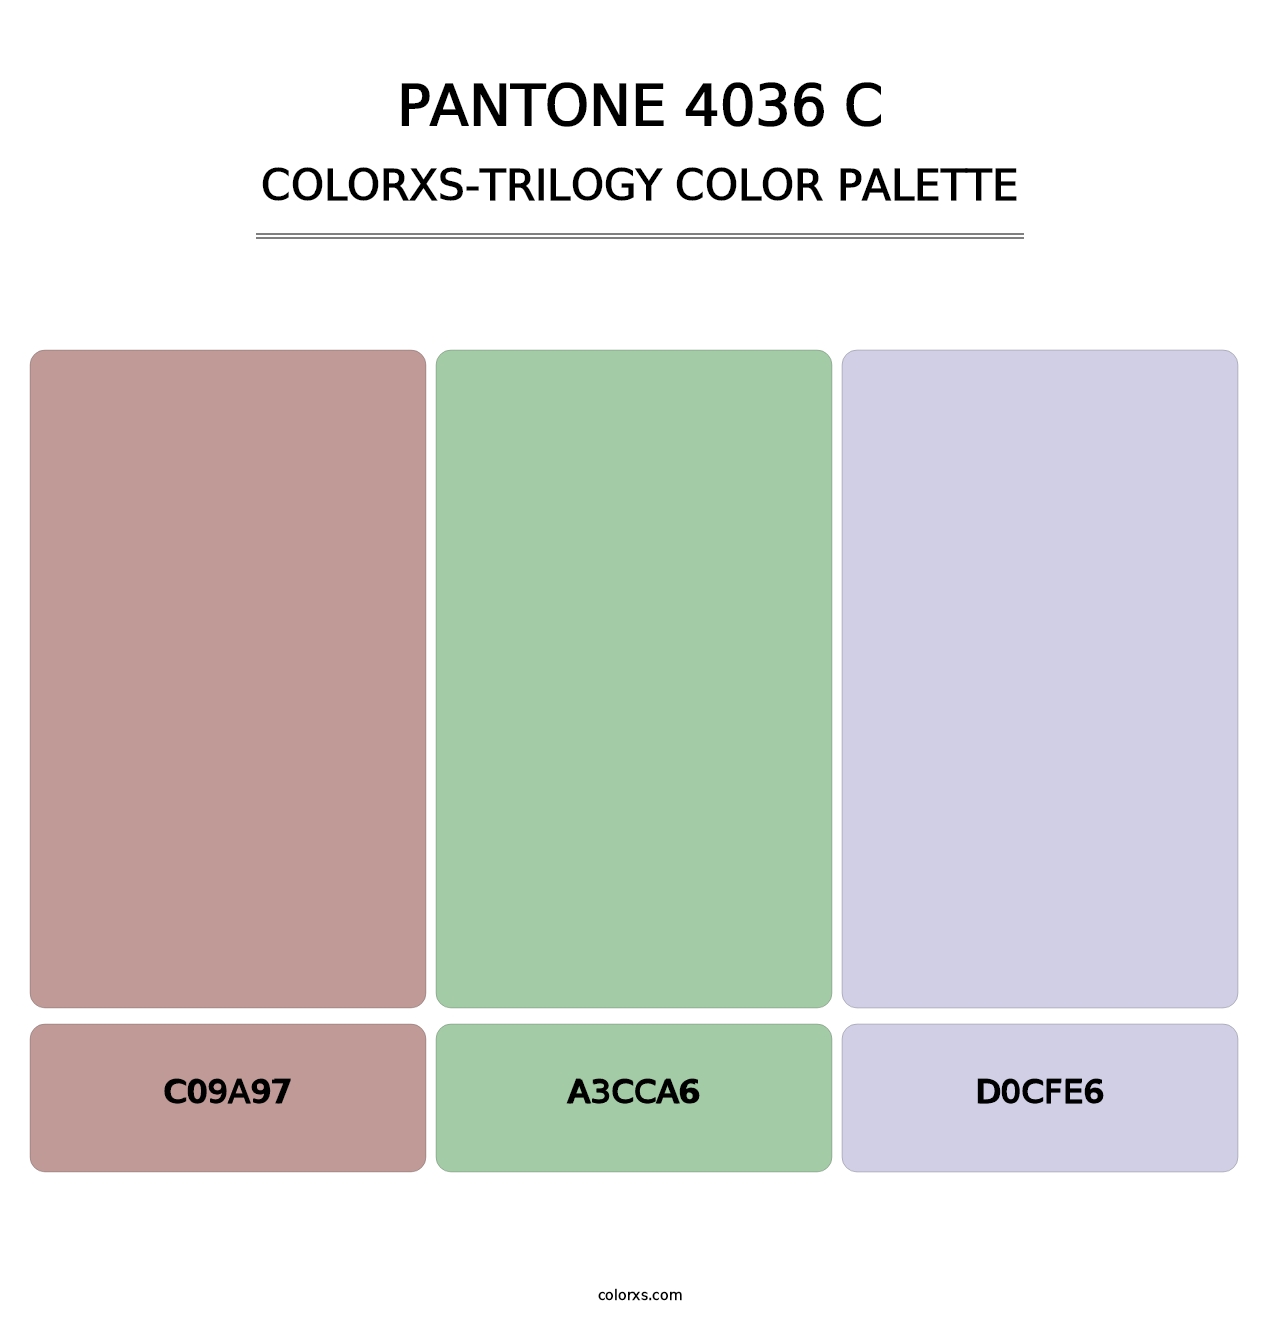 PANTONE 4036 C - Colorxs Trilogy Palette